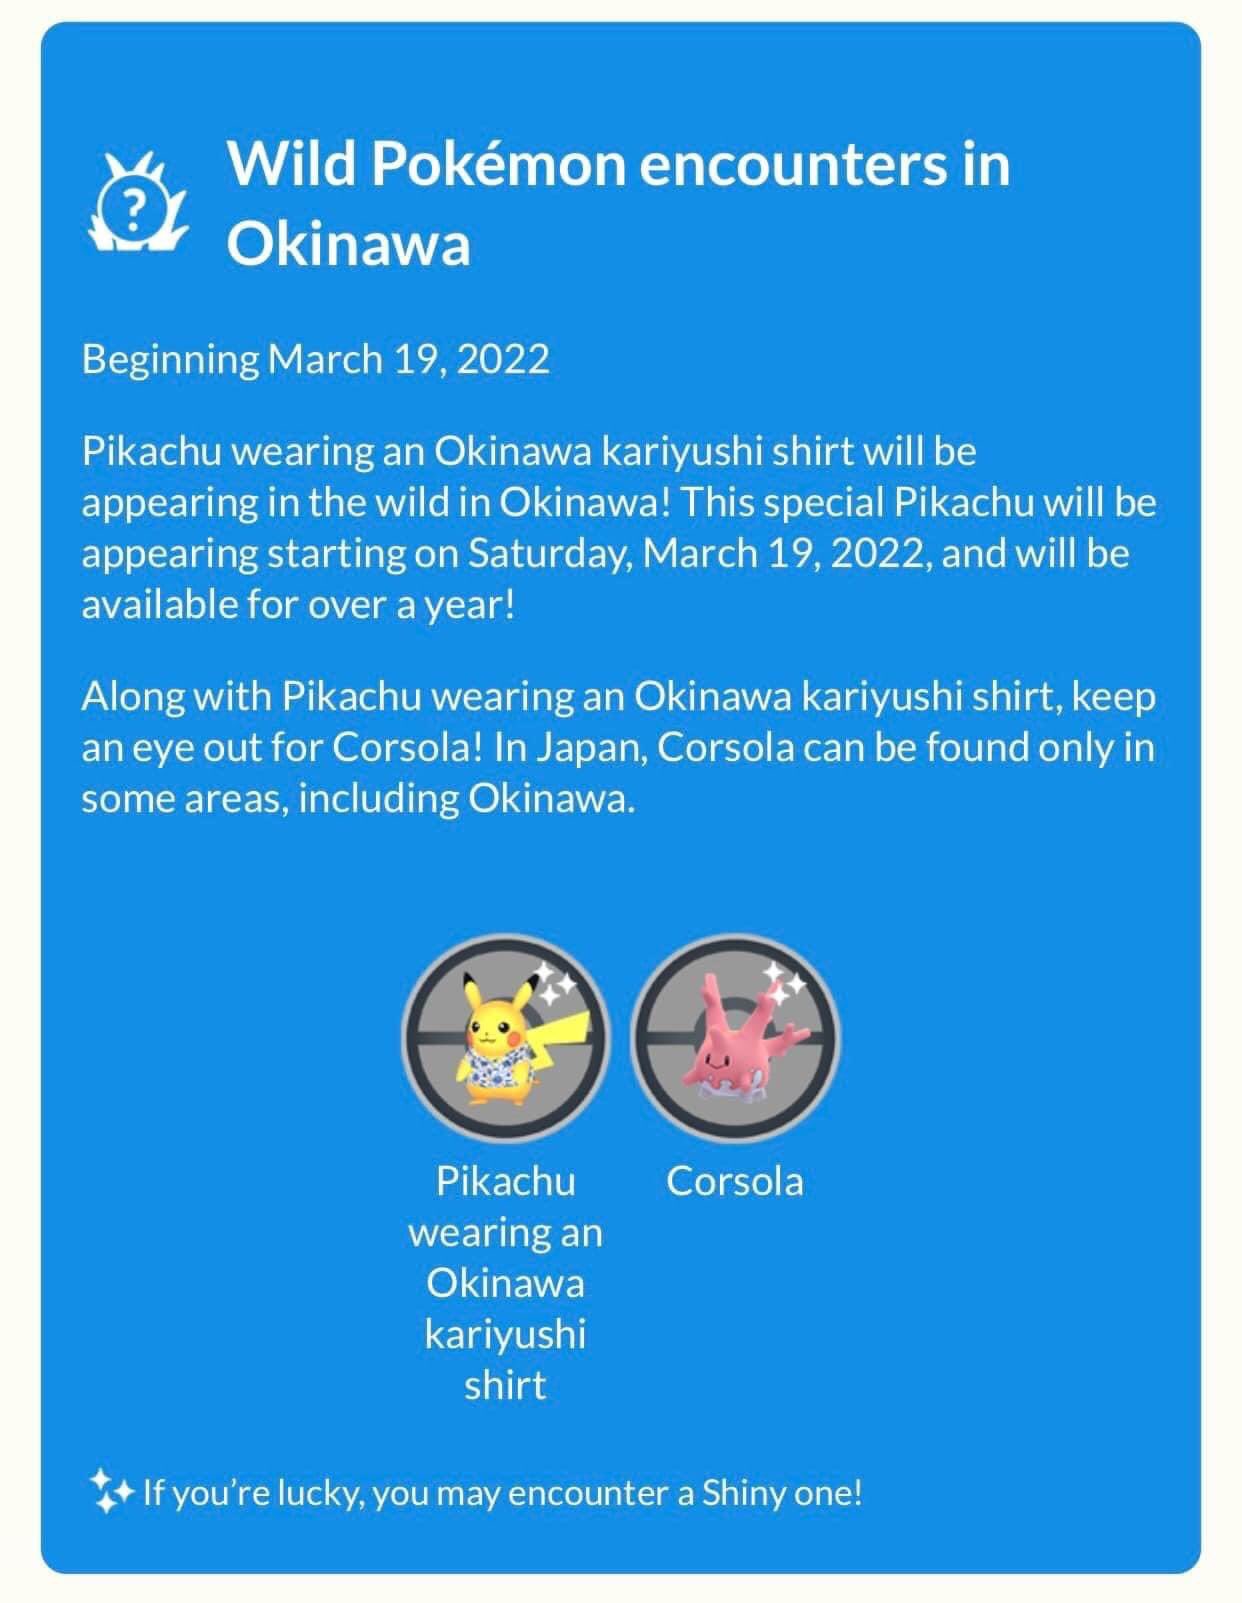 Pokemon Iv100 Pikachu Wearing An Okinawa Kariyushi Shirt Everyone Buy Trade Contact Me Price Cheap New Event T Co Sw3xl3oieo Twitter